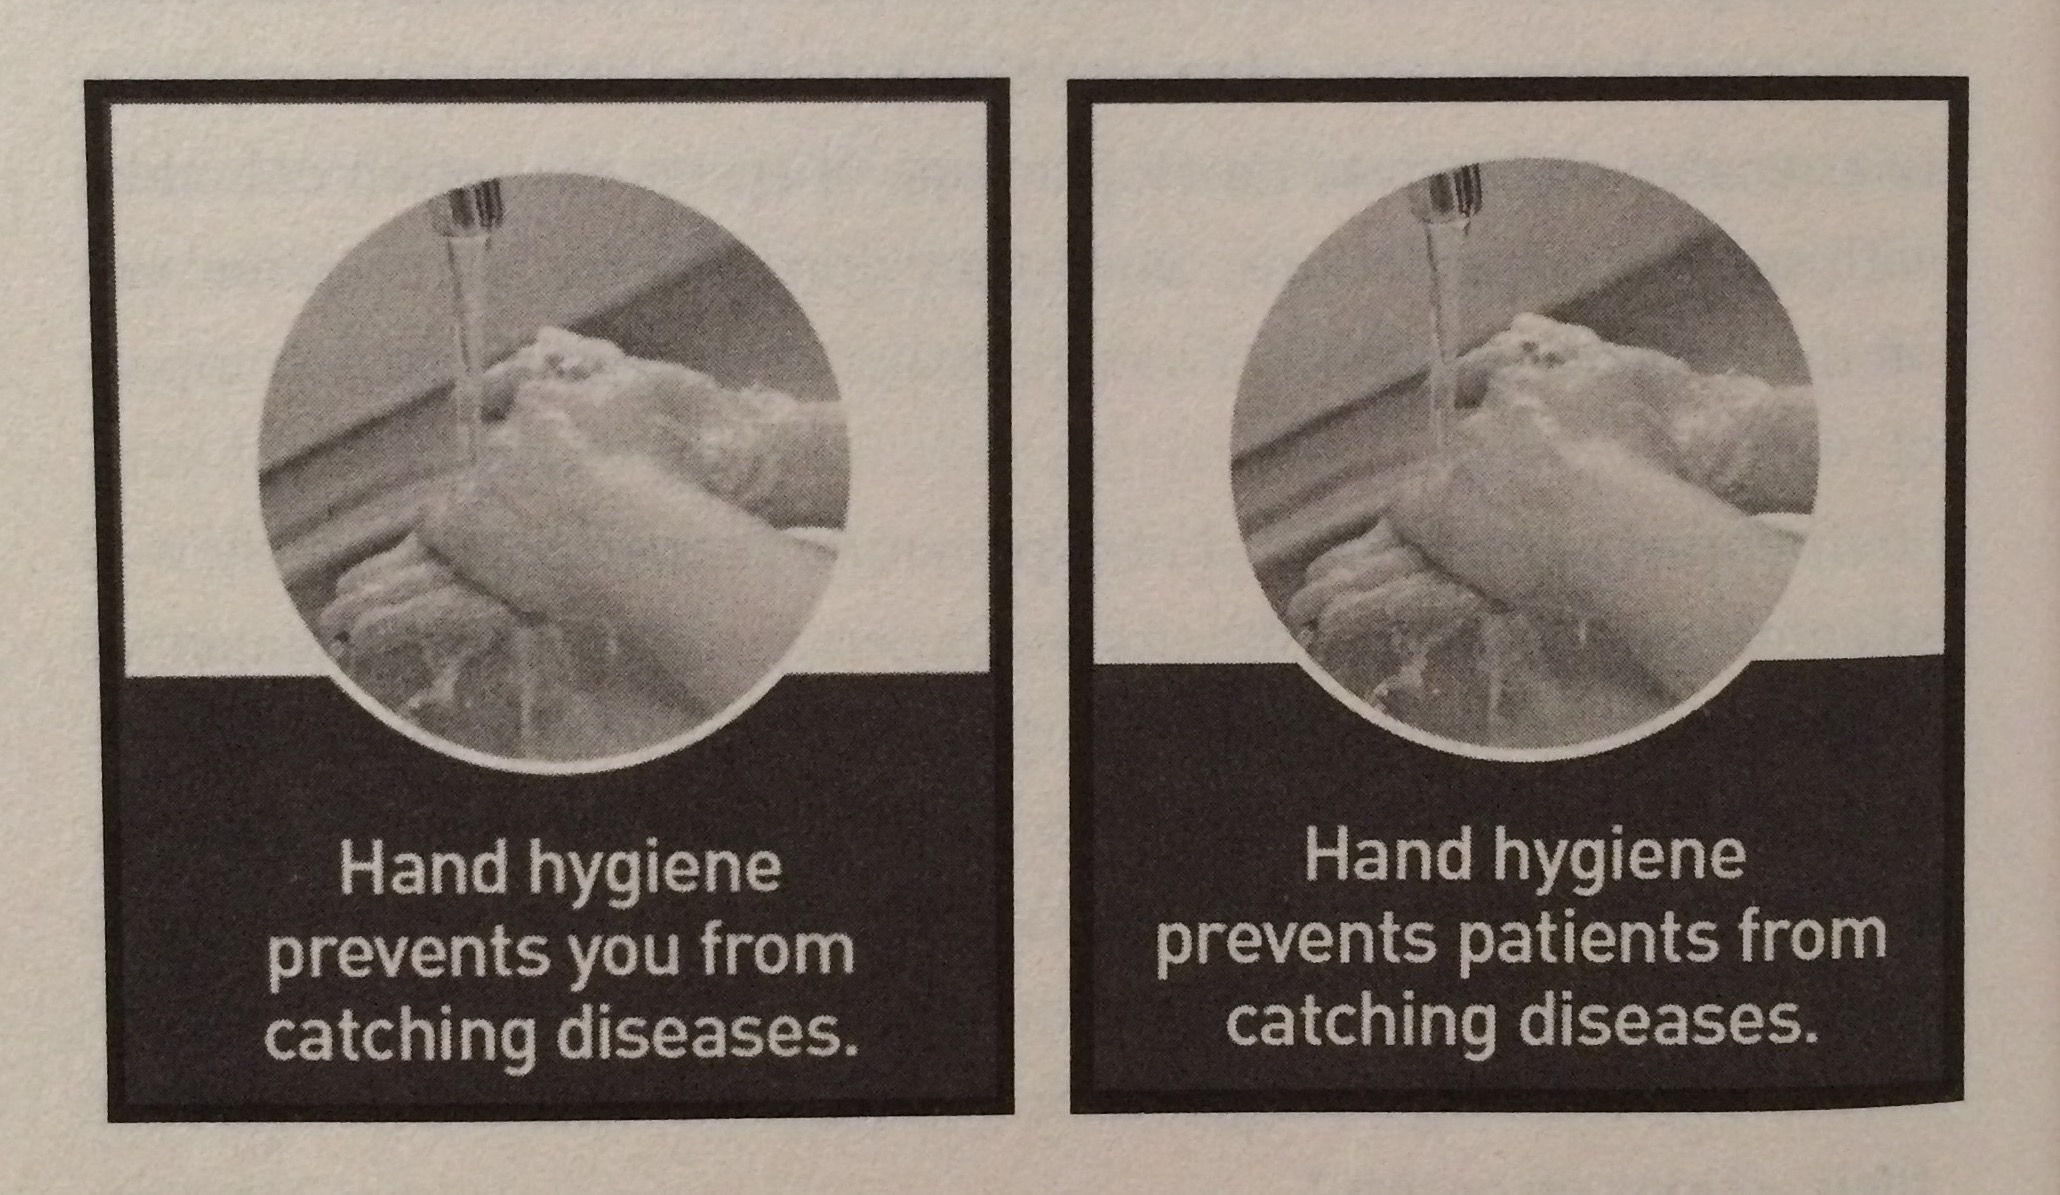 De ce nu ne spălăm pe mâini în spitale?